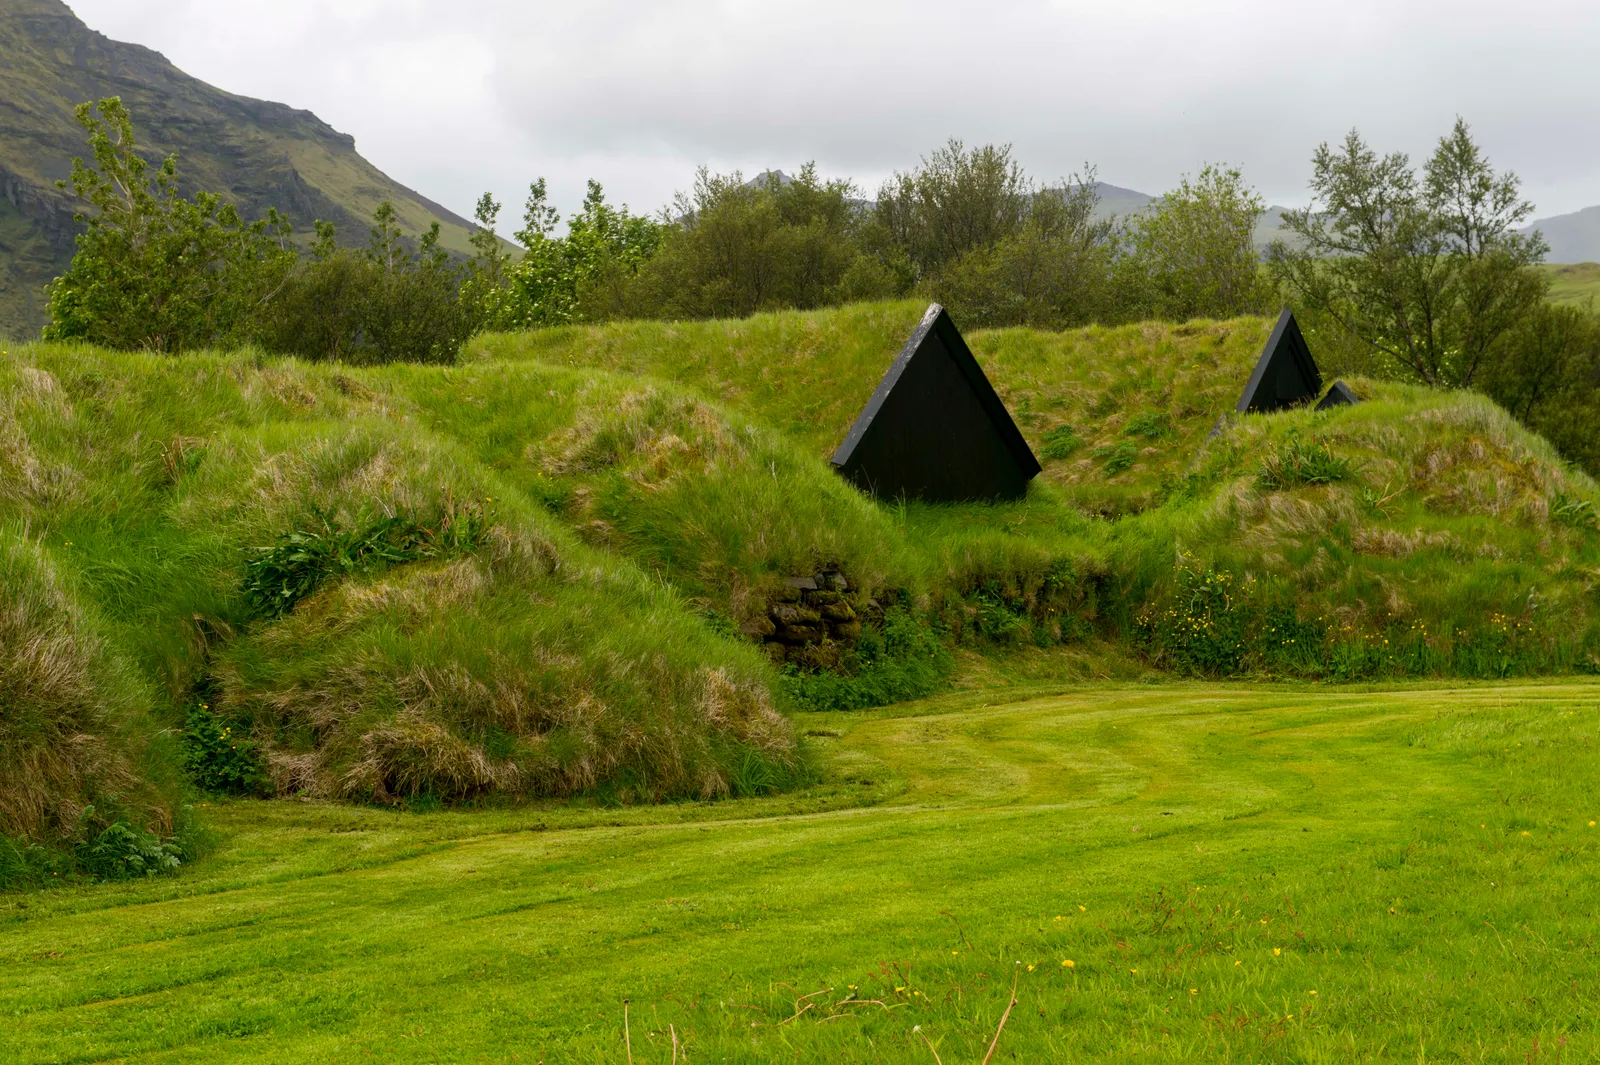 Turf Houses (Iceland) Nhà cỏ (Iceland)  Mặc dù xinh đẹp, địa hình của Iceland đặc biệt khó sinh sống, đó là lý do tại sao nó vẫn là một trong những  quốc gia ít dân cư nhất ở châu Âu. Trên thực tế, những ngôi nhà bằng cỏ giống như những ngôi nhà được thấy ở trên, là một lý do lớn khiến những người định cư Bắc Âu ban đầu có thể thành lập cộng đồng trên đảo. Được thiết kế như những cấu trúc gỗ đơn giản, các bức tường và mái nhà được làm bằng những khối cỏ, điều này cũng giúp ngụy trang cho những ngôi nhà nếu bạn không biết mình đang tìm kiếm thứ gì. Mặc dù chúng có thể được tìm thấy trên khắp hòn đảo và nhiều ngôi nhà có niên đại hơn một trăm năm, nhưng nhóm nhà cỏ rộng lớn nhất được tìm thấy ở Glaumbær.